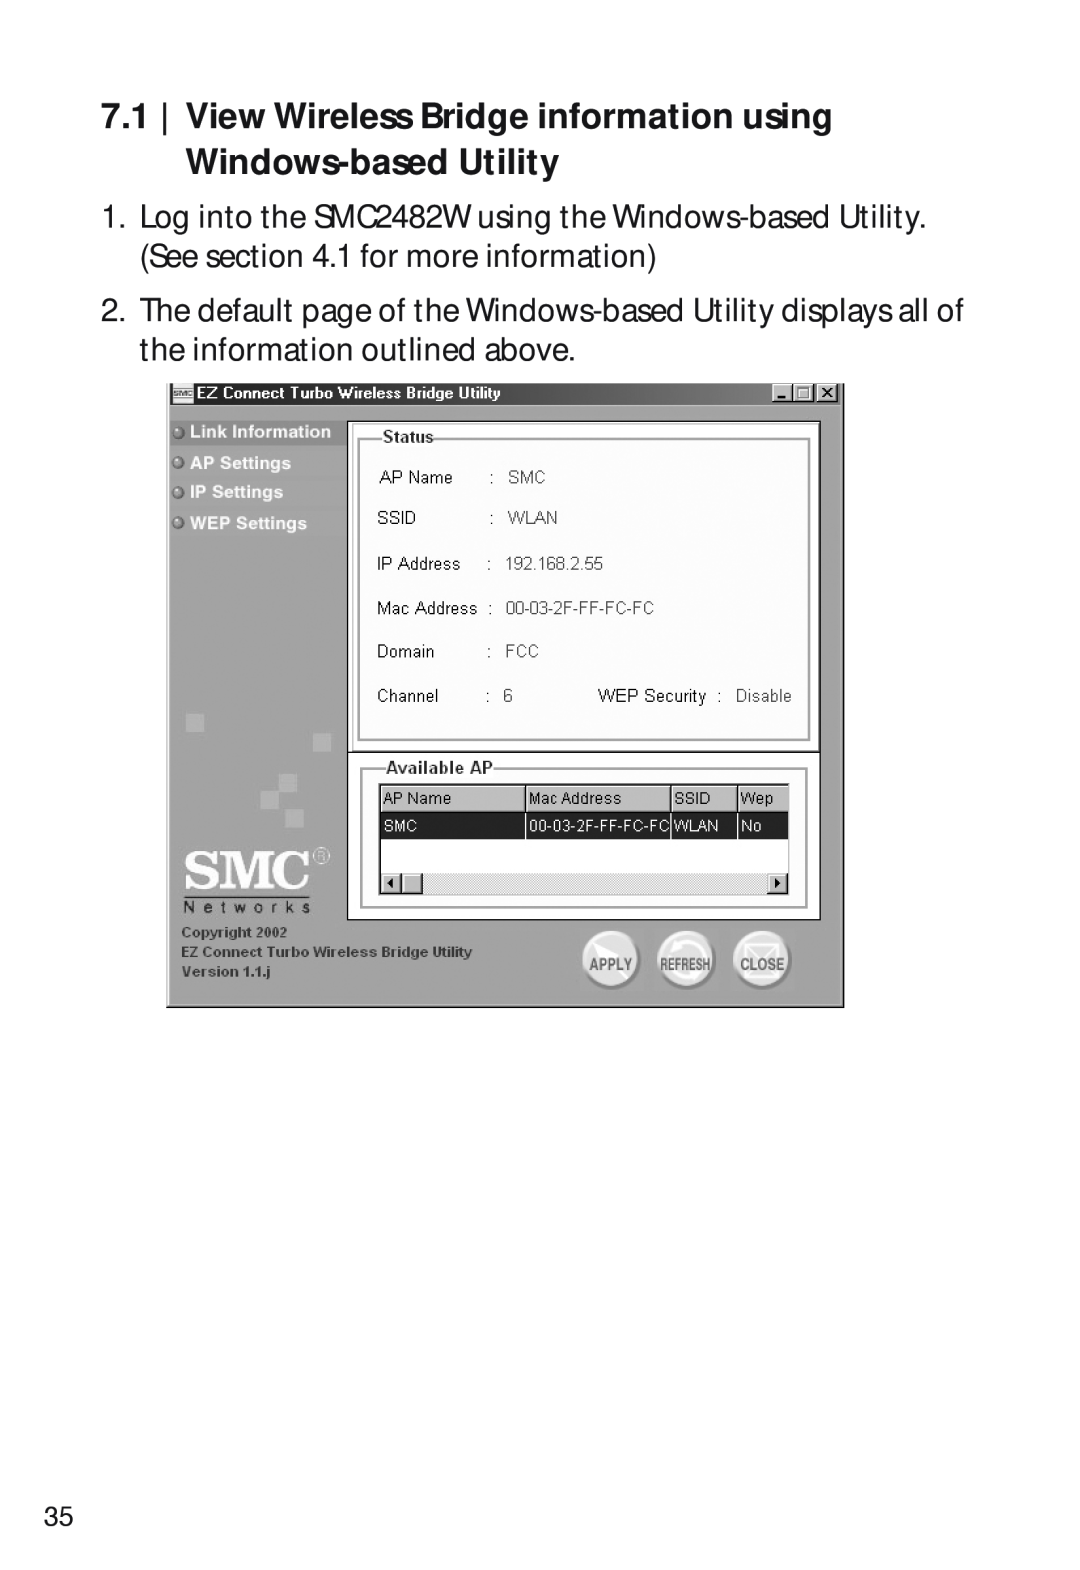 SMC Networks SMC2482W manual View Wireless Bridge information using Windows-based Utility 